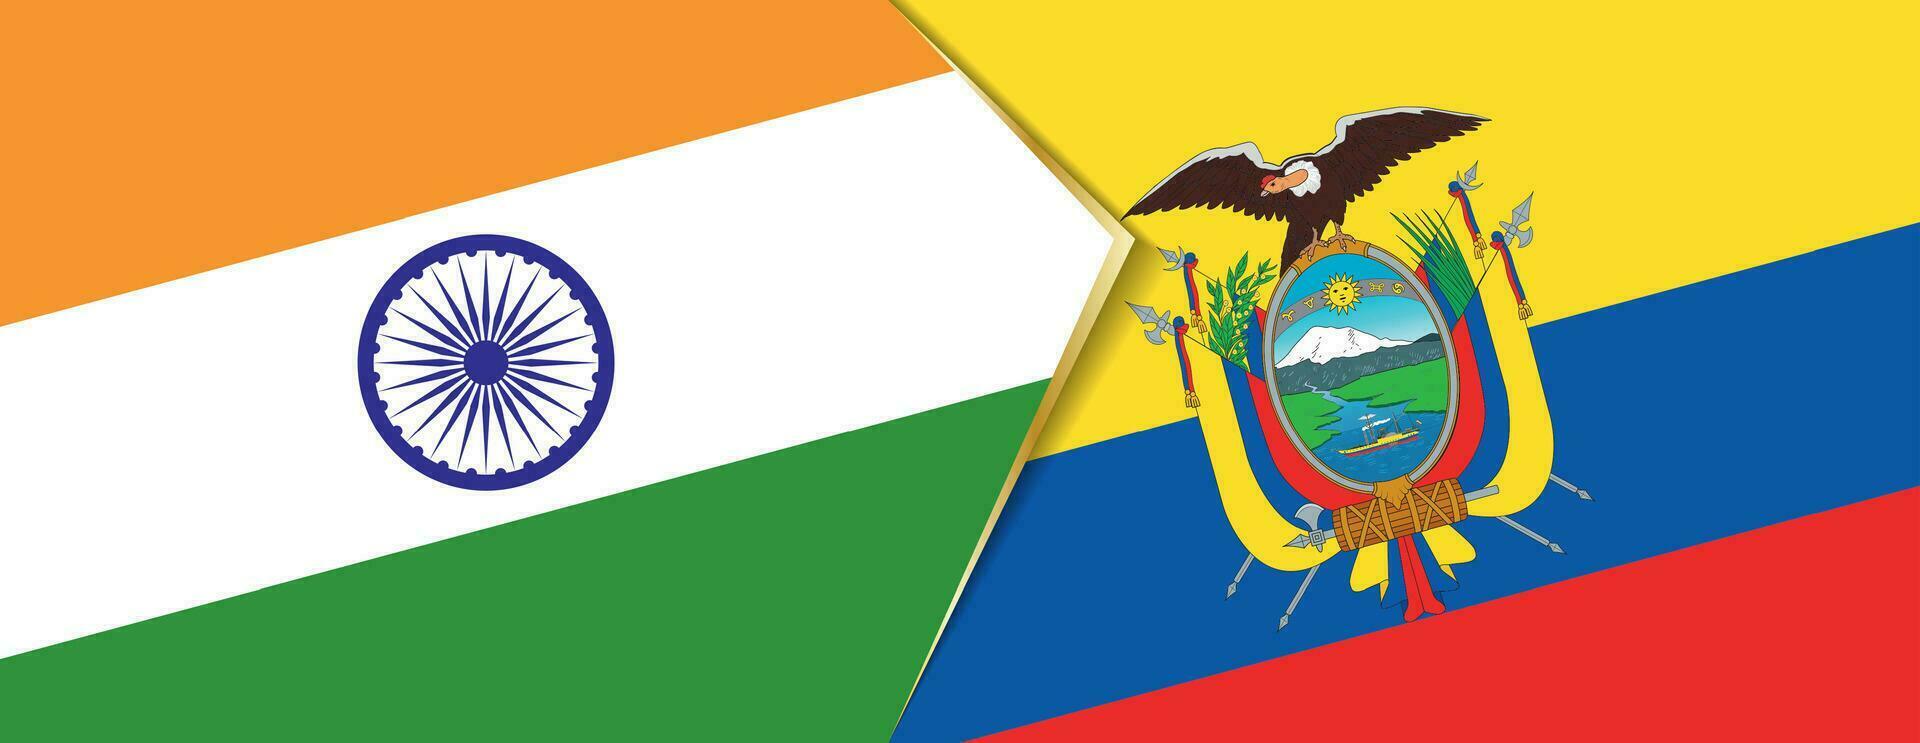 India y Ecuador banderas, dos vector banderas